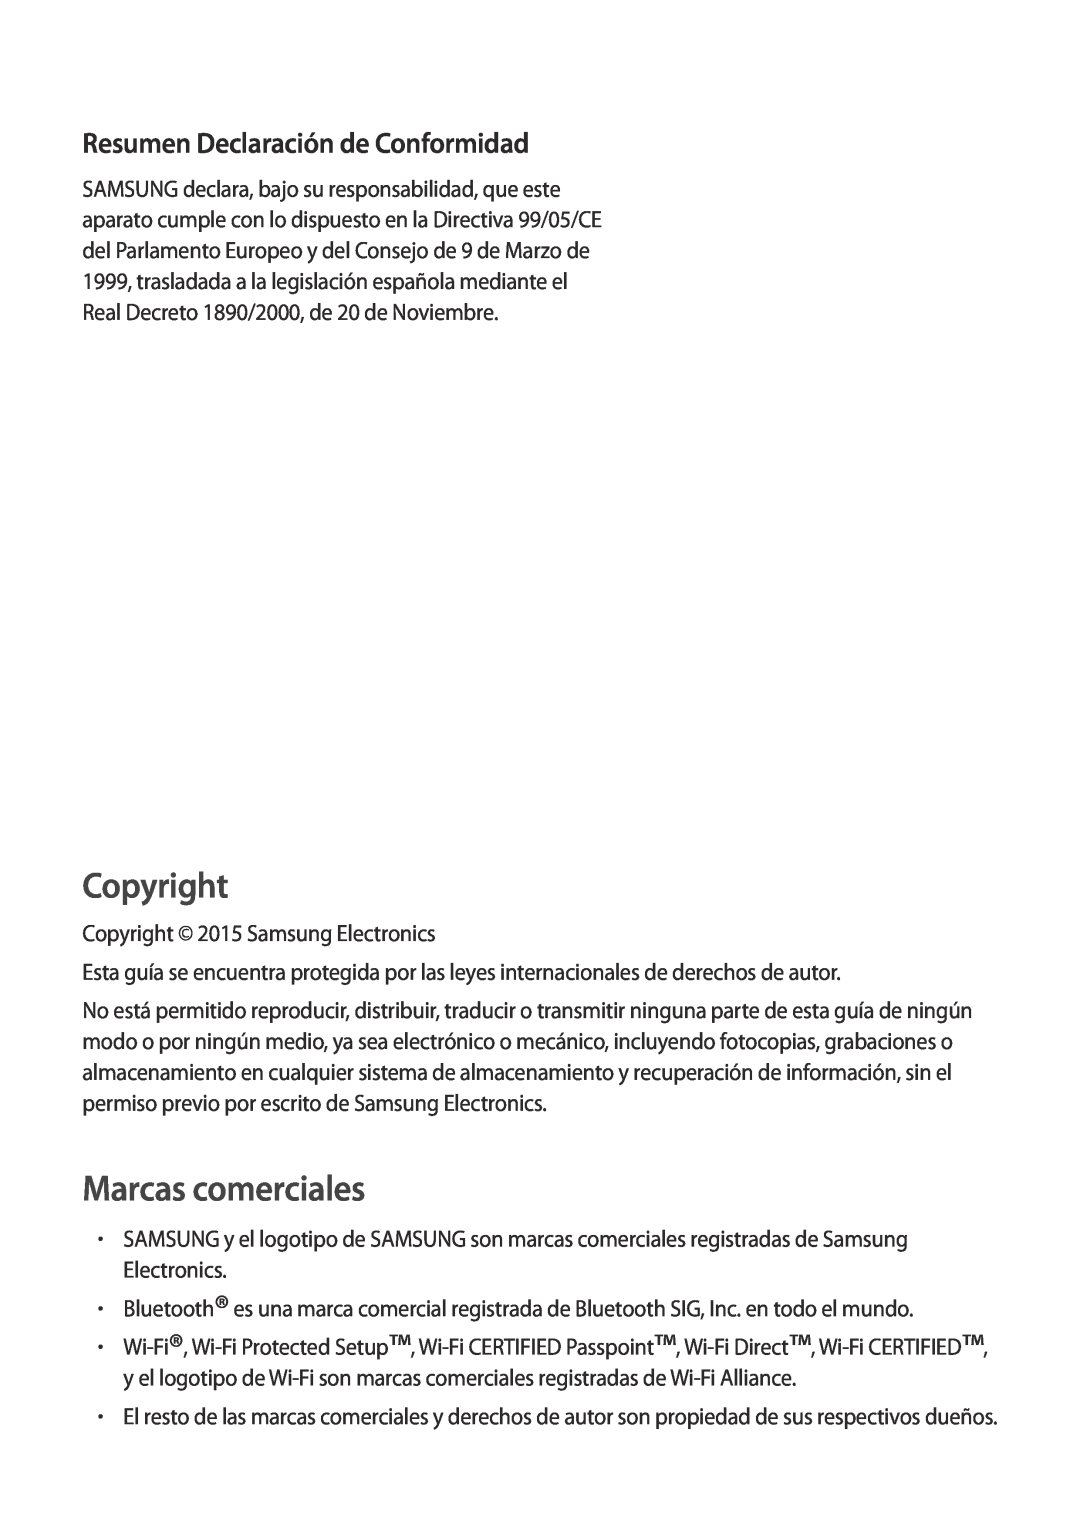 Samsung SM-G901FZBADTM, SM-G901FZKADBT, SM-G901FZDADTM Resumen Declaración de Conformidad, Copyright, Marcas comerciales 